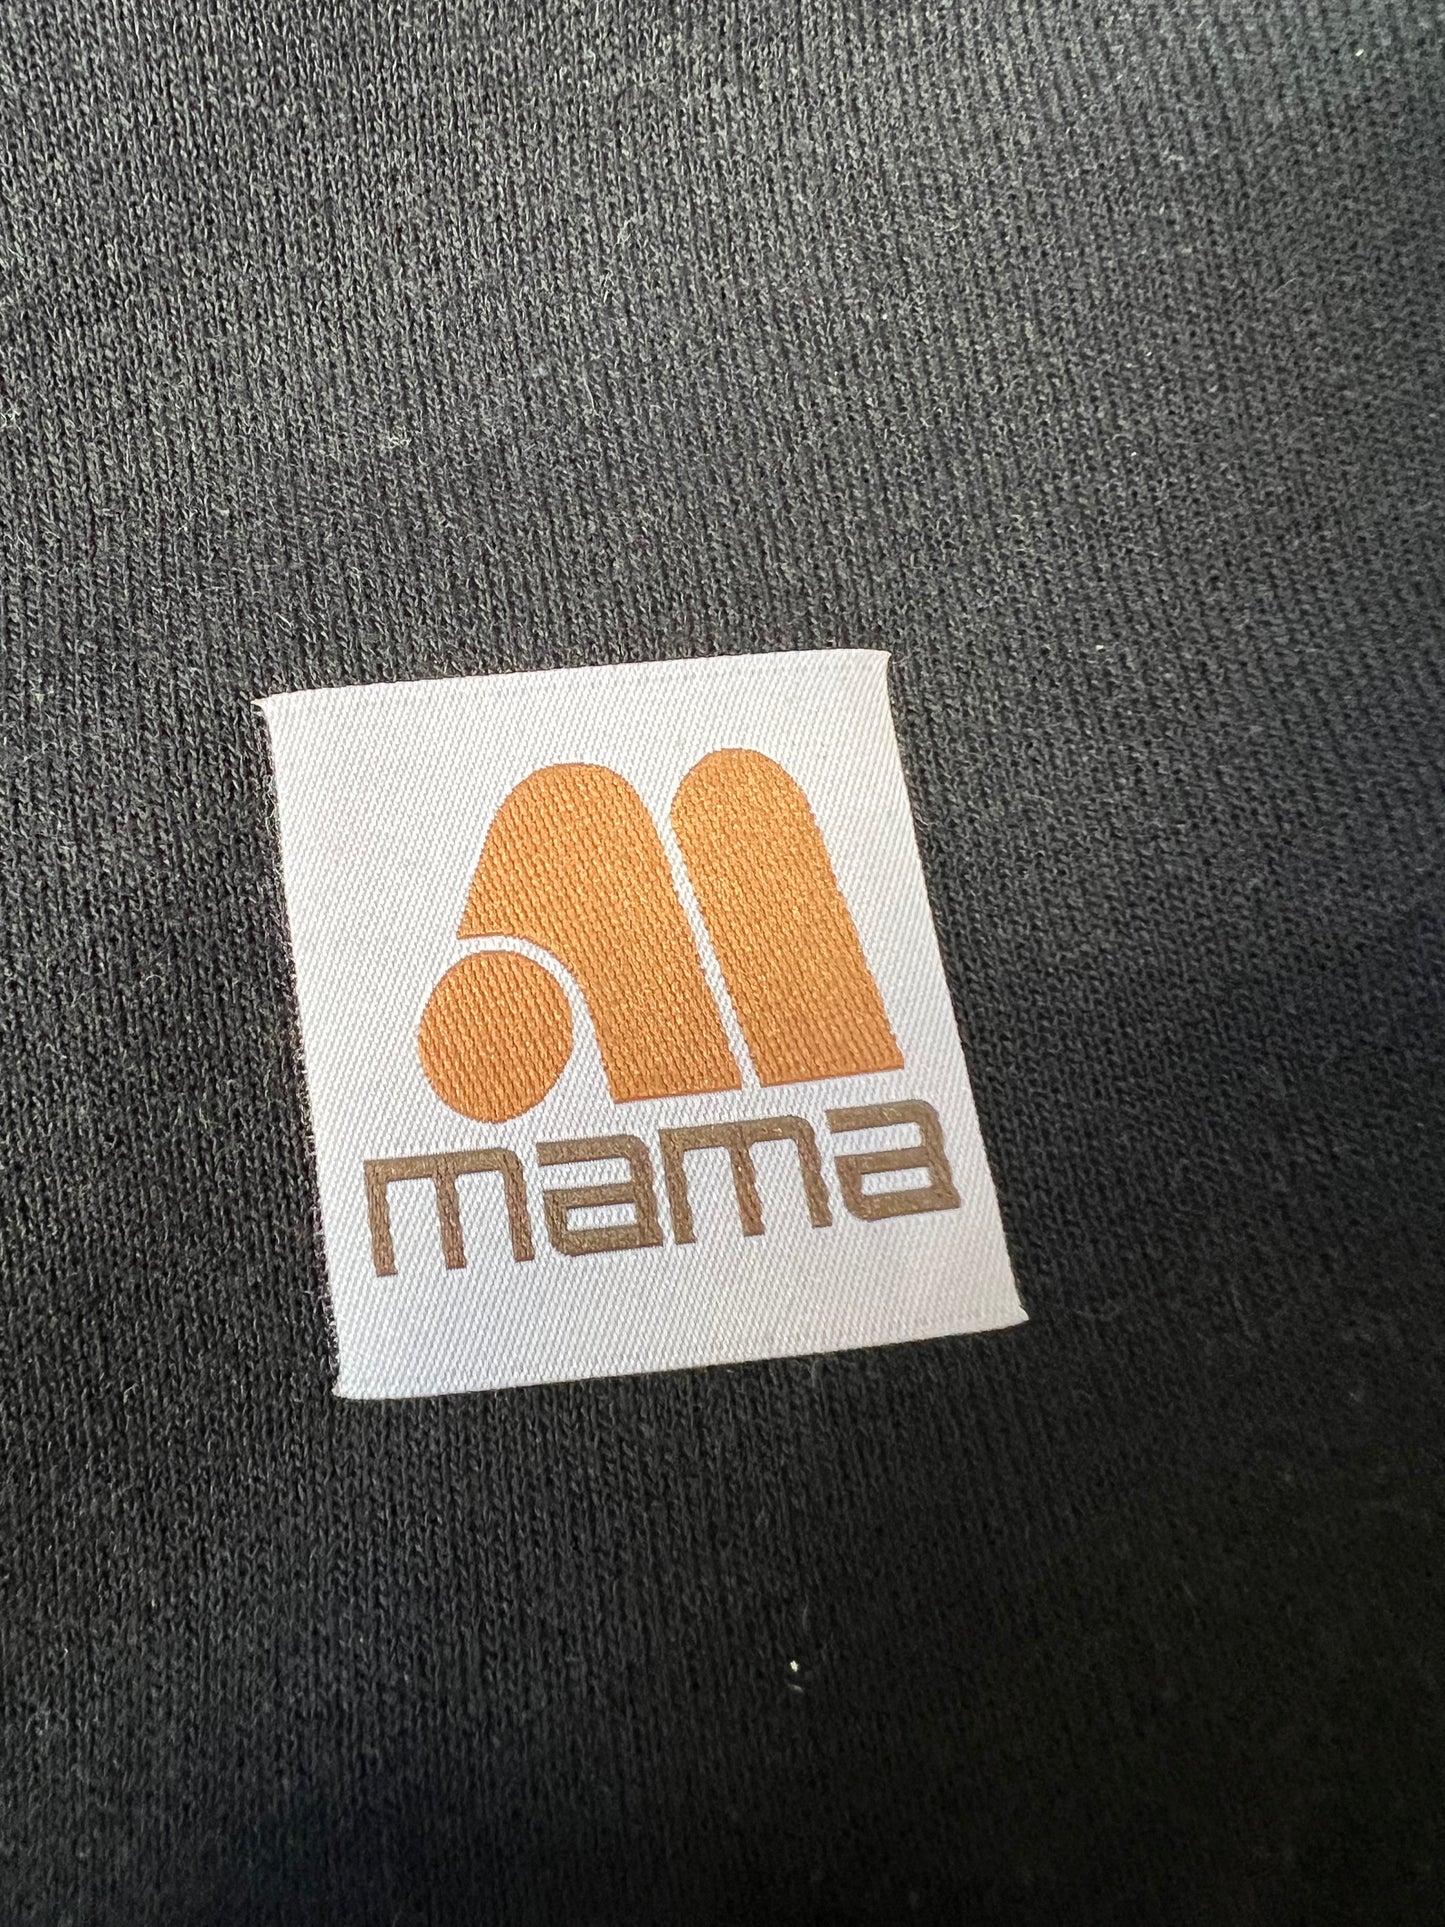 Woven Mama Logo - Black Pullover